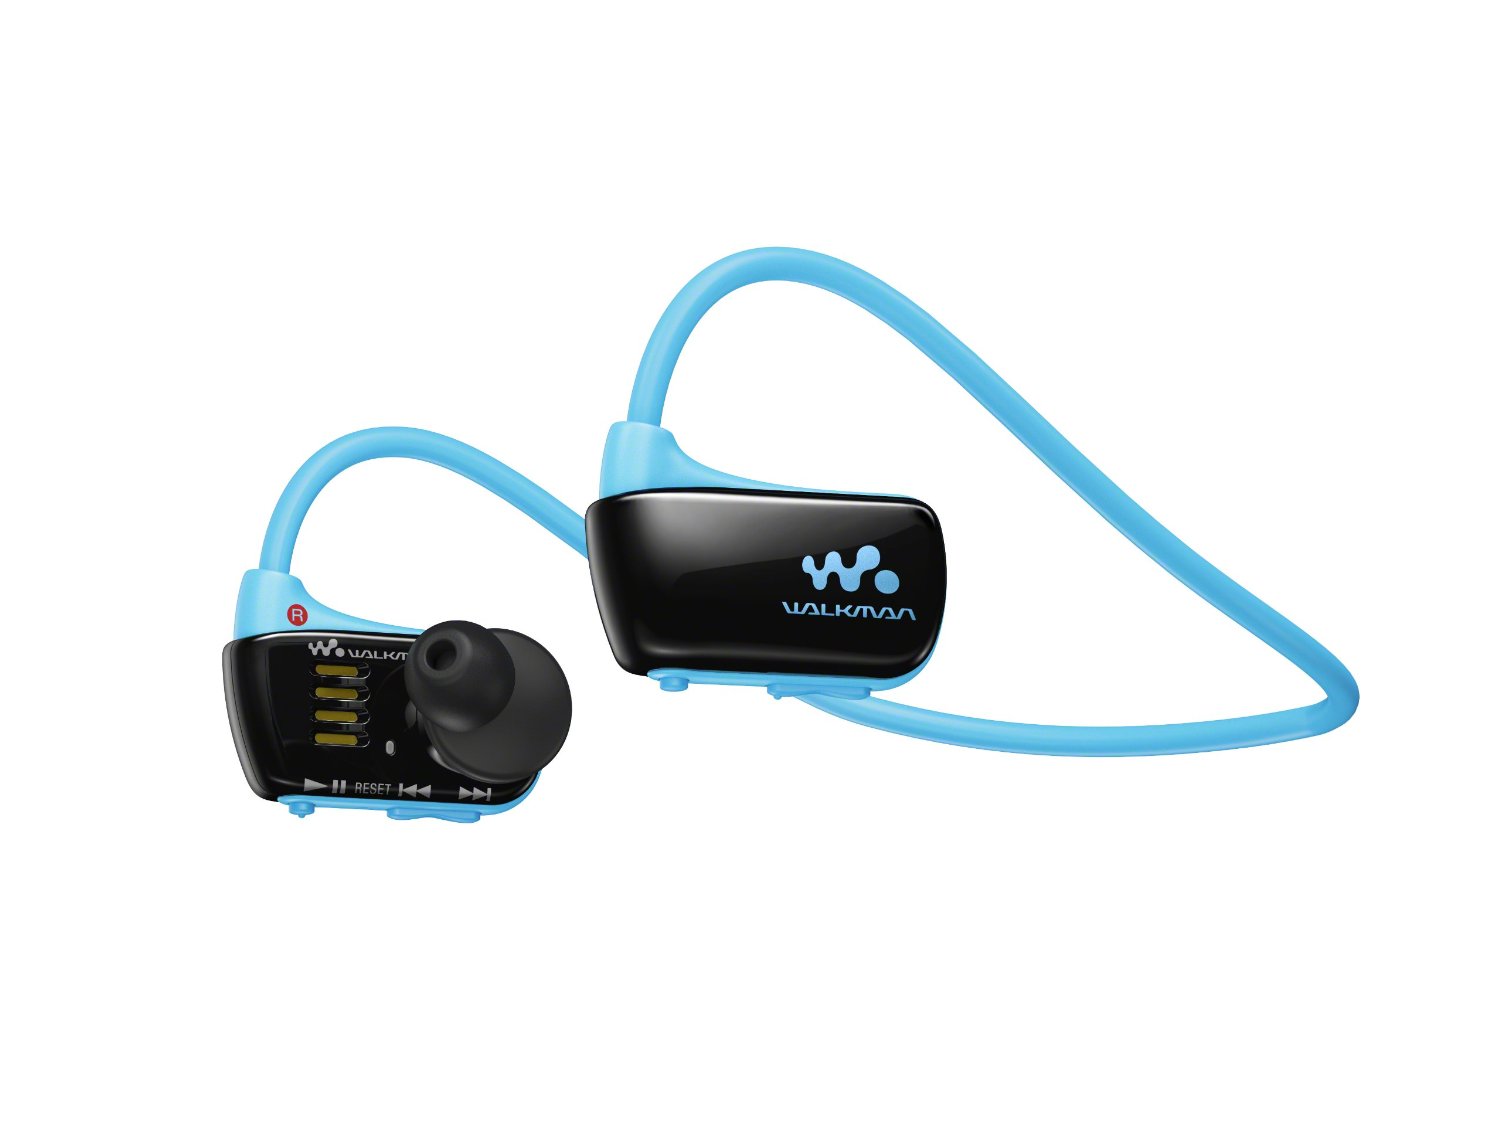 Sony Walkman NWZW273S 4 GB Waterproof Sports MP3 Player (Blue) w